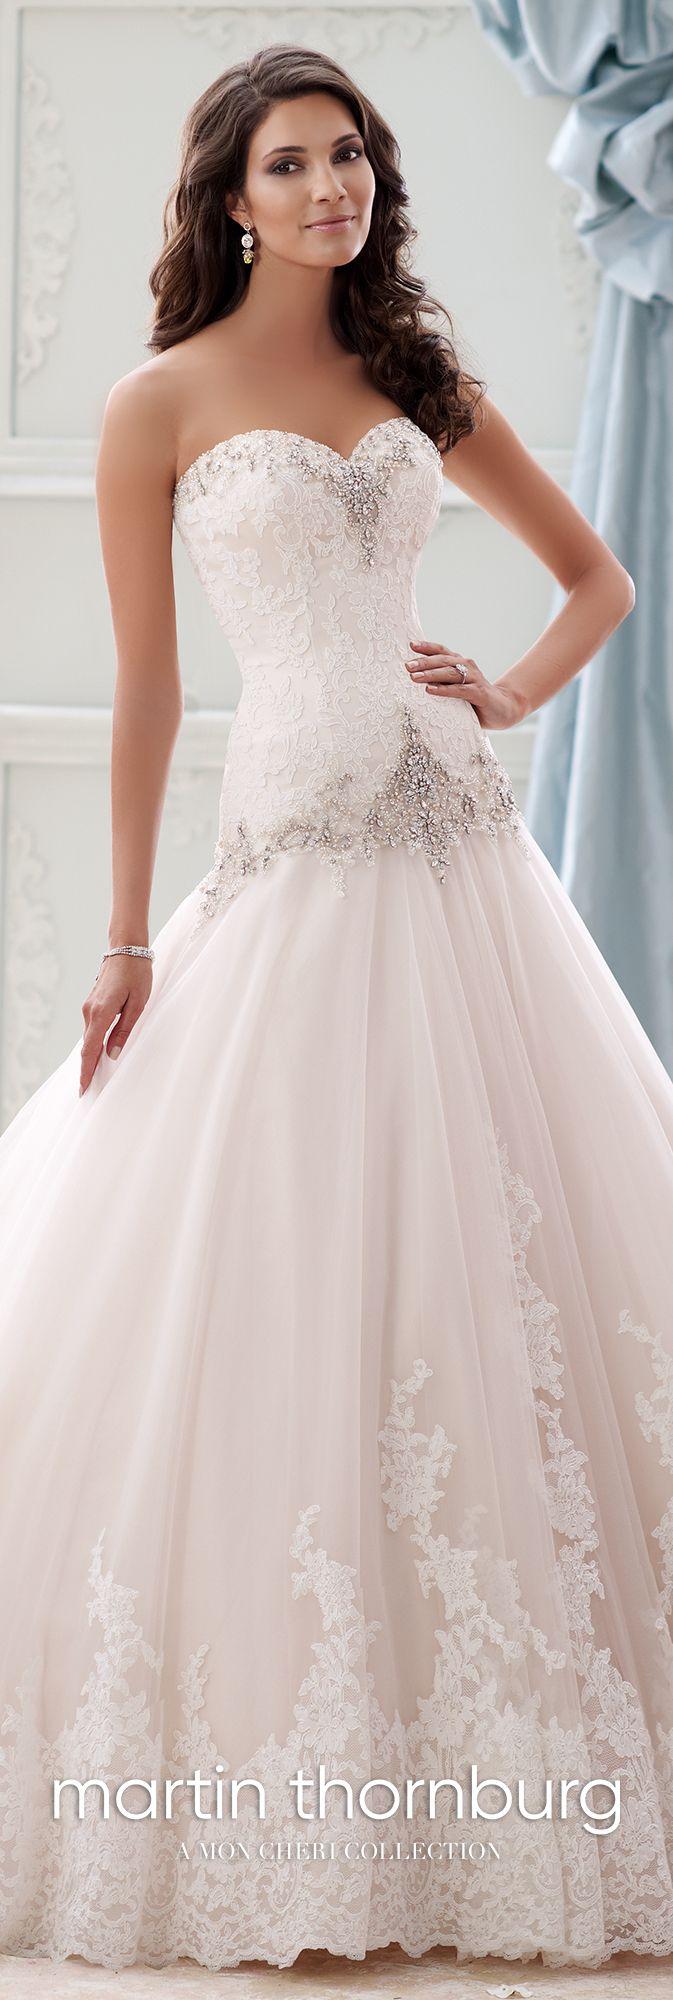 Wedding - Beaded Dropped-Waist Taffeta Ball Gown Wedding Dress- 115228 Ocean